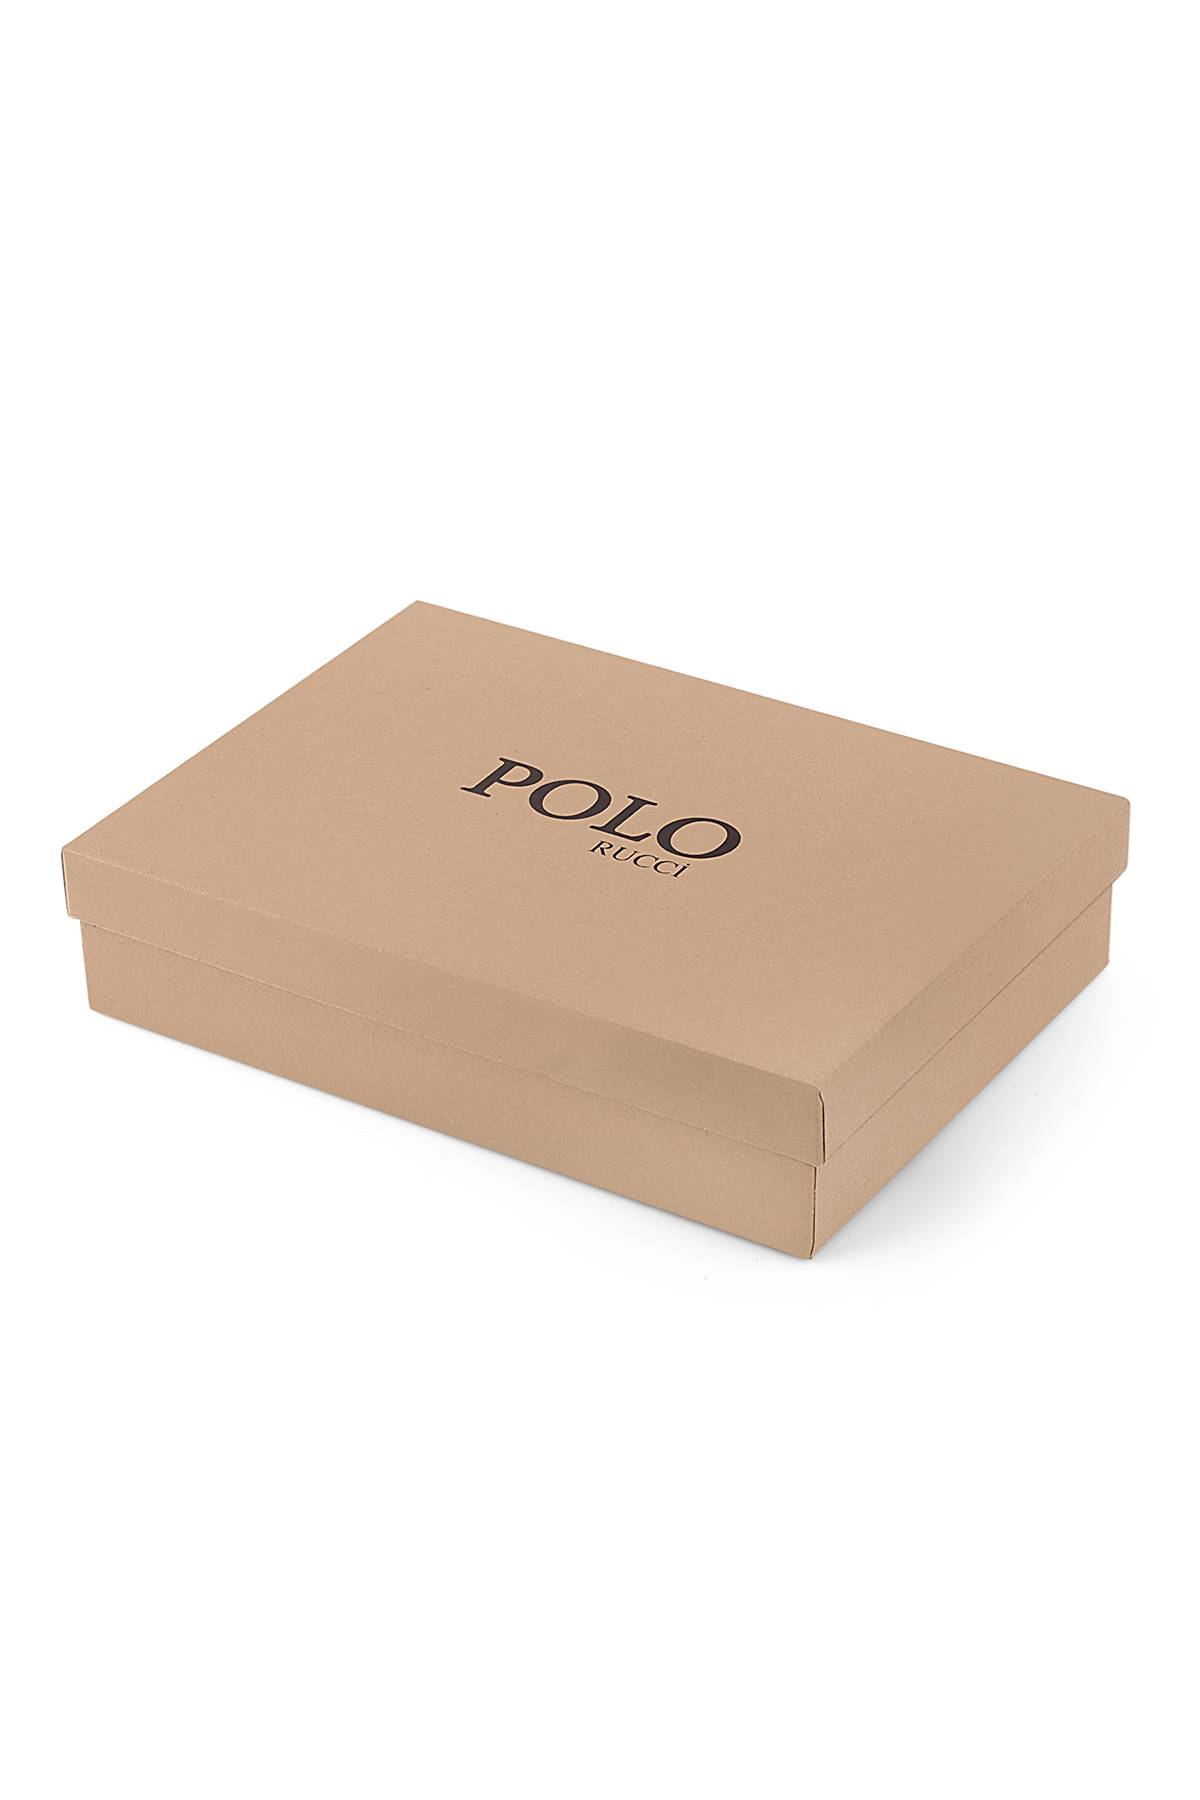 Polo Rucci Kişiye Özel Hediye Paketli Kapıda Ödeme Erkek Kol Saati      PL-0576E2